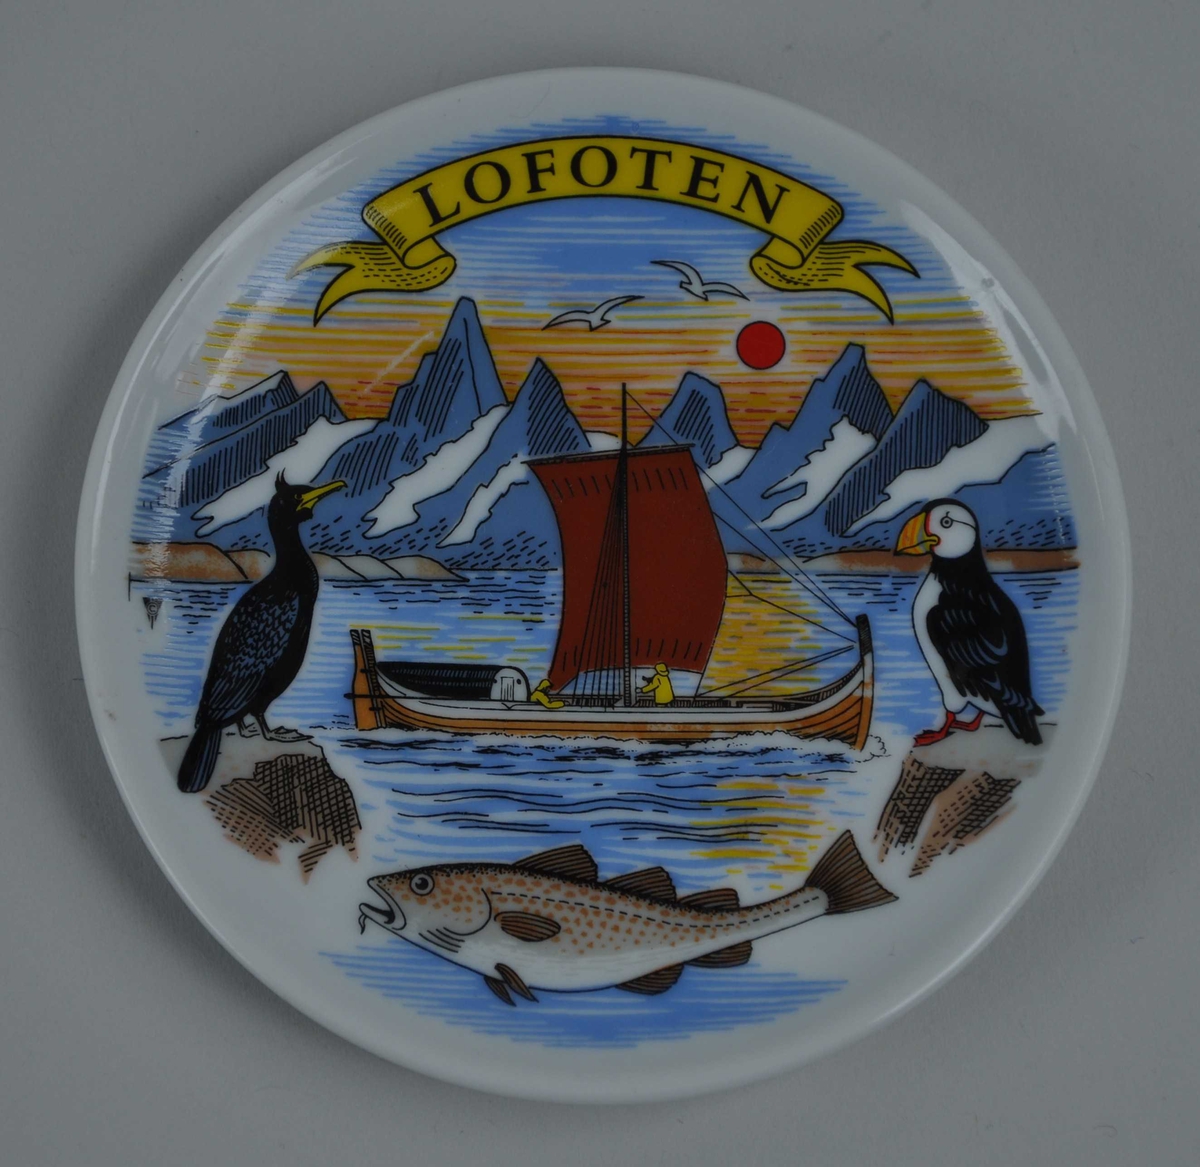 Motiv frå Lofoten, med Lofotveggen i bakgrunnen, ein Nordlandsbåt med segl og to fiskarar ombord, og i framgrunnen ein skarv, ein lundefugl og ein skrei. Lofoten står på eit gult banner øvst på brikka.